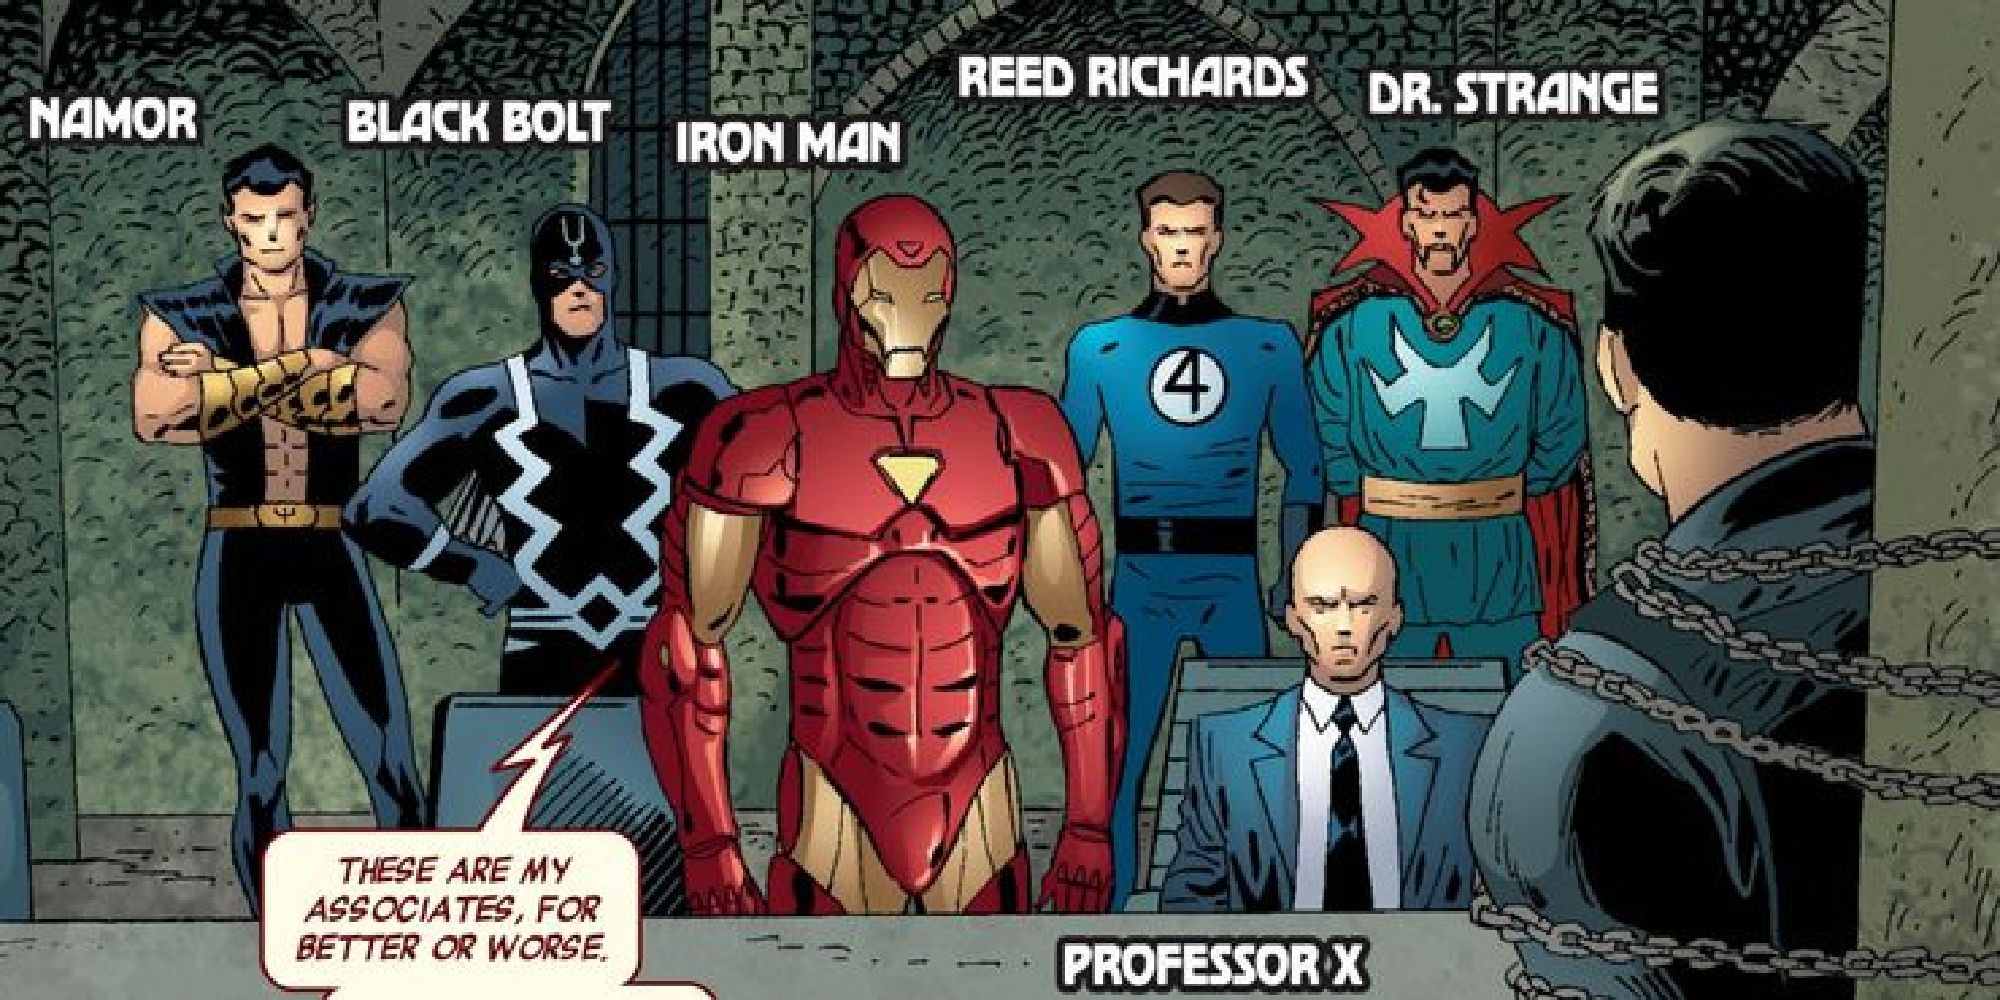 Железный человек возглавляет иллюминатов, включая Нэмора, Черного грома, профессора Икс, Рида Ричардса и Доктора Стрэнджа.